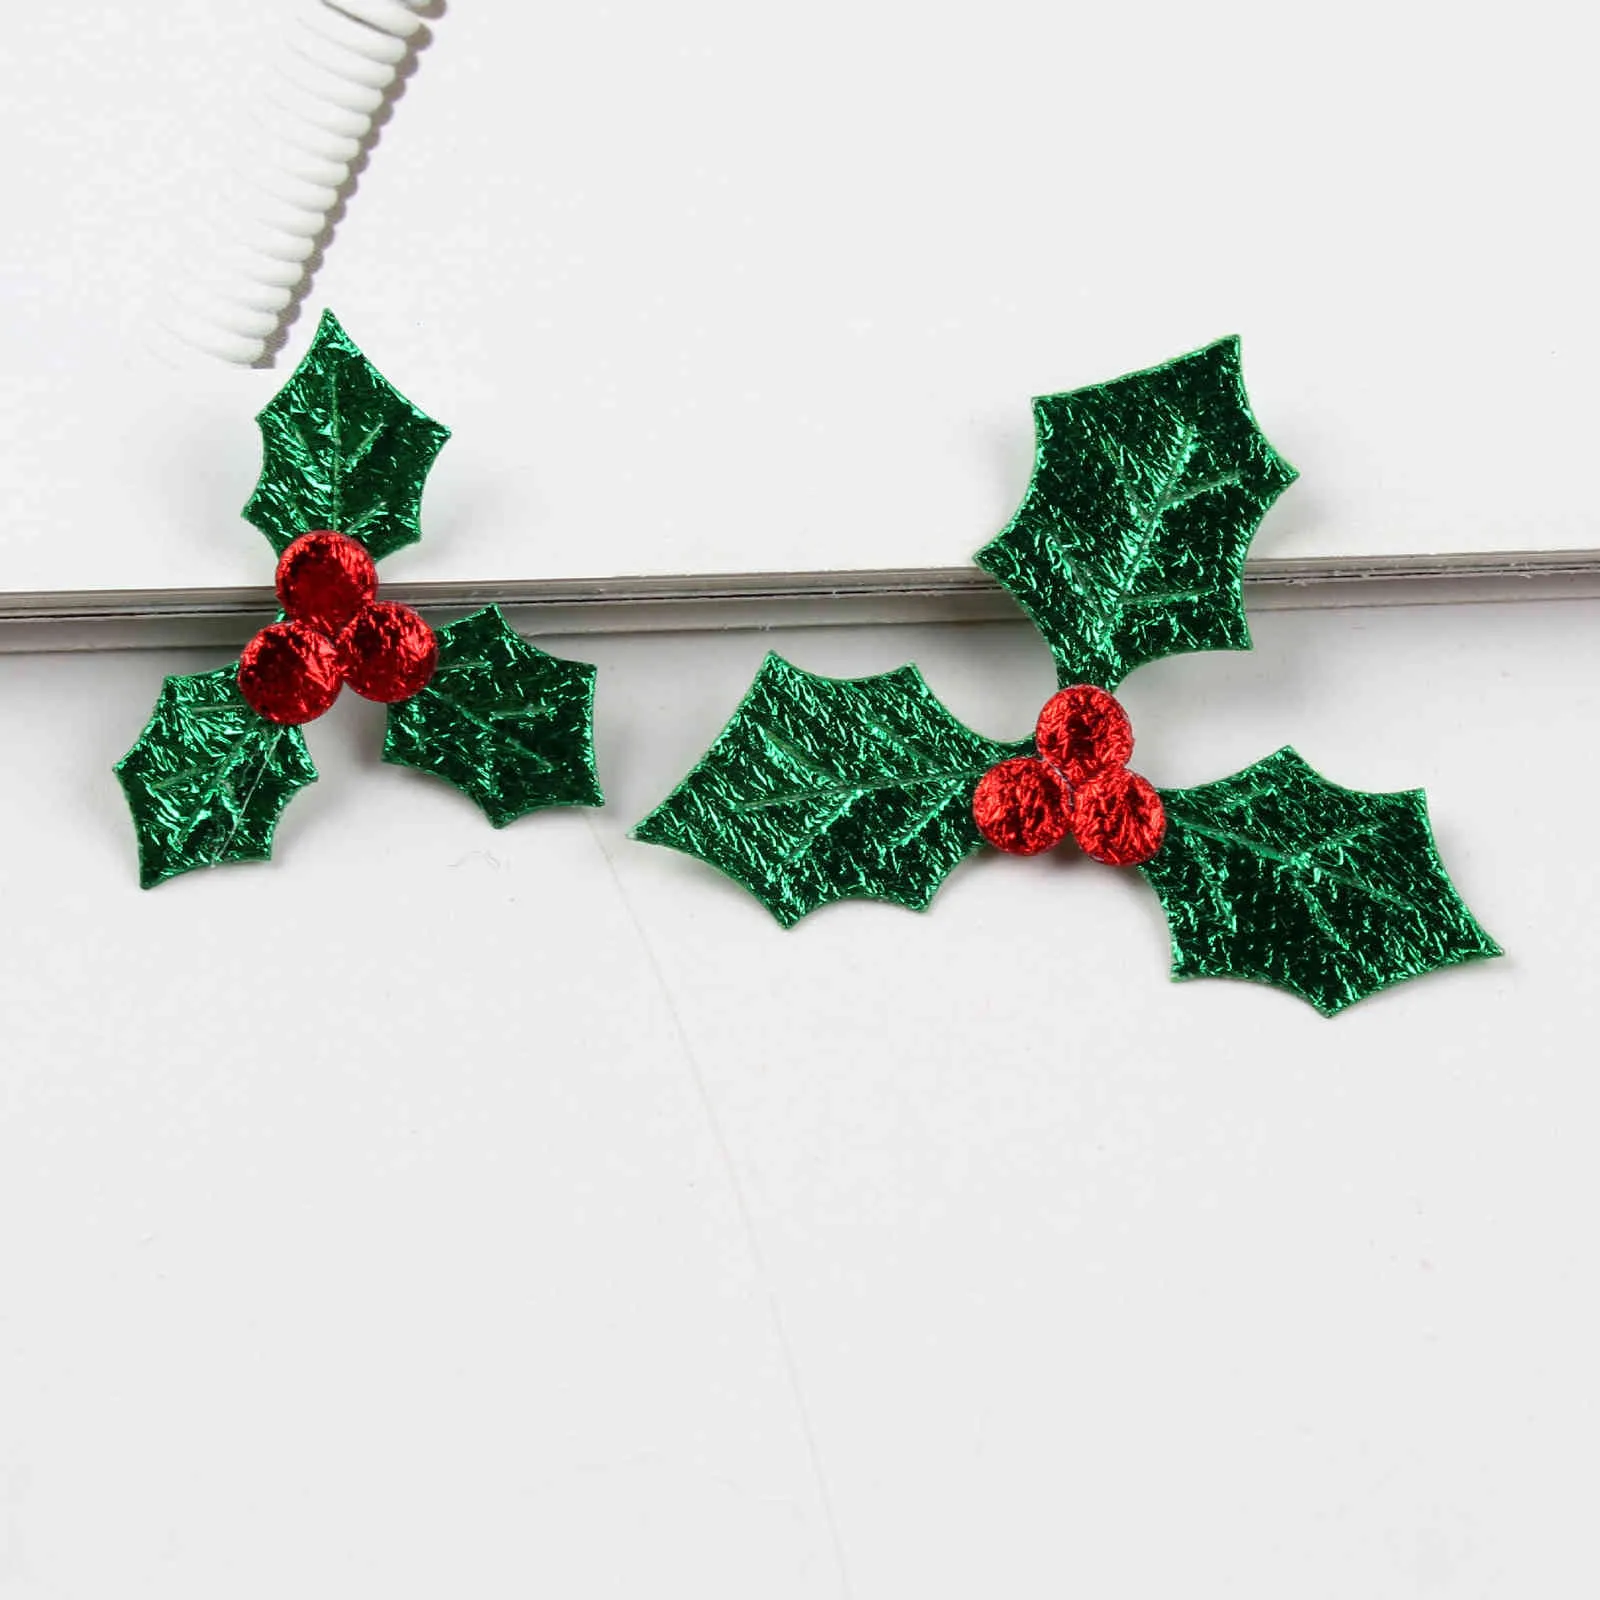 Bacca rossa con foglie verdi Decorazioni la decorazione dell'albero di Natale Accessori del tessuto di arte fai da te l'ornamento della festa domestica